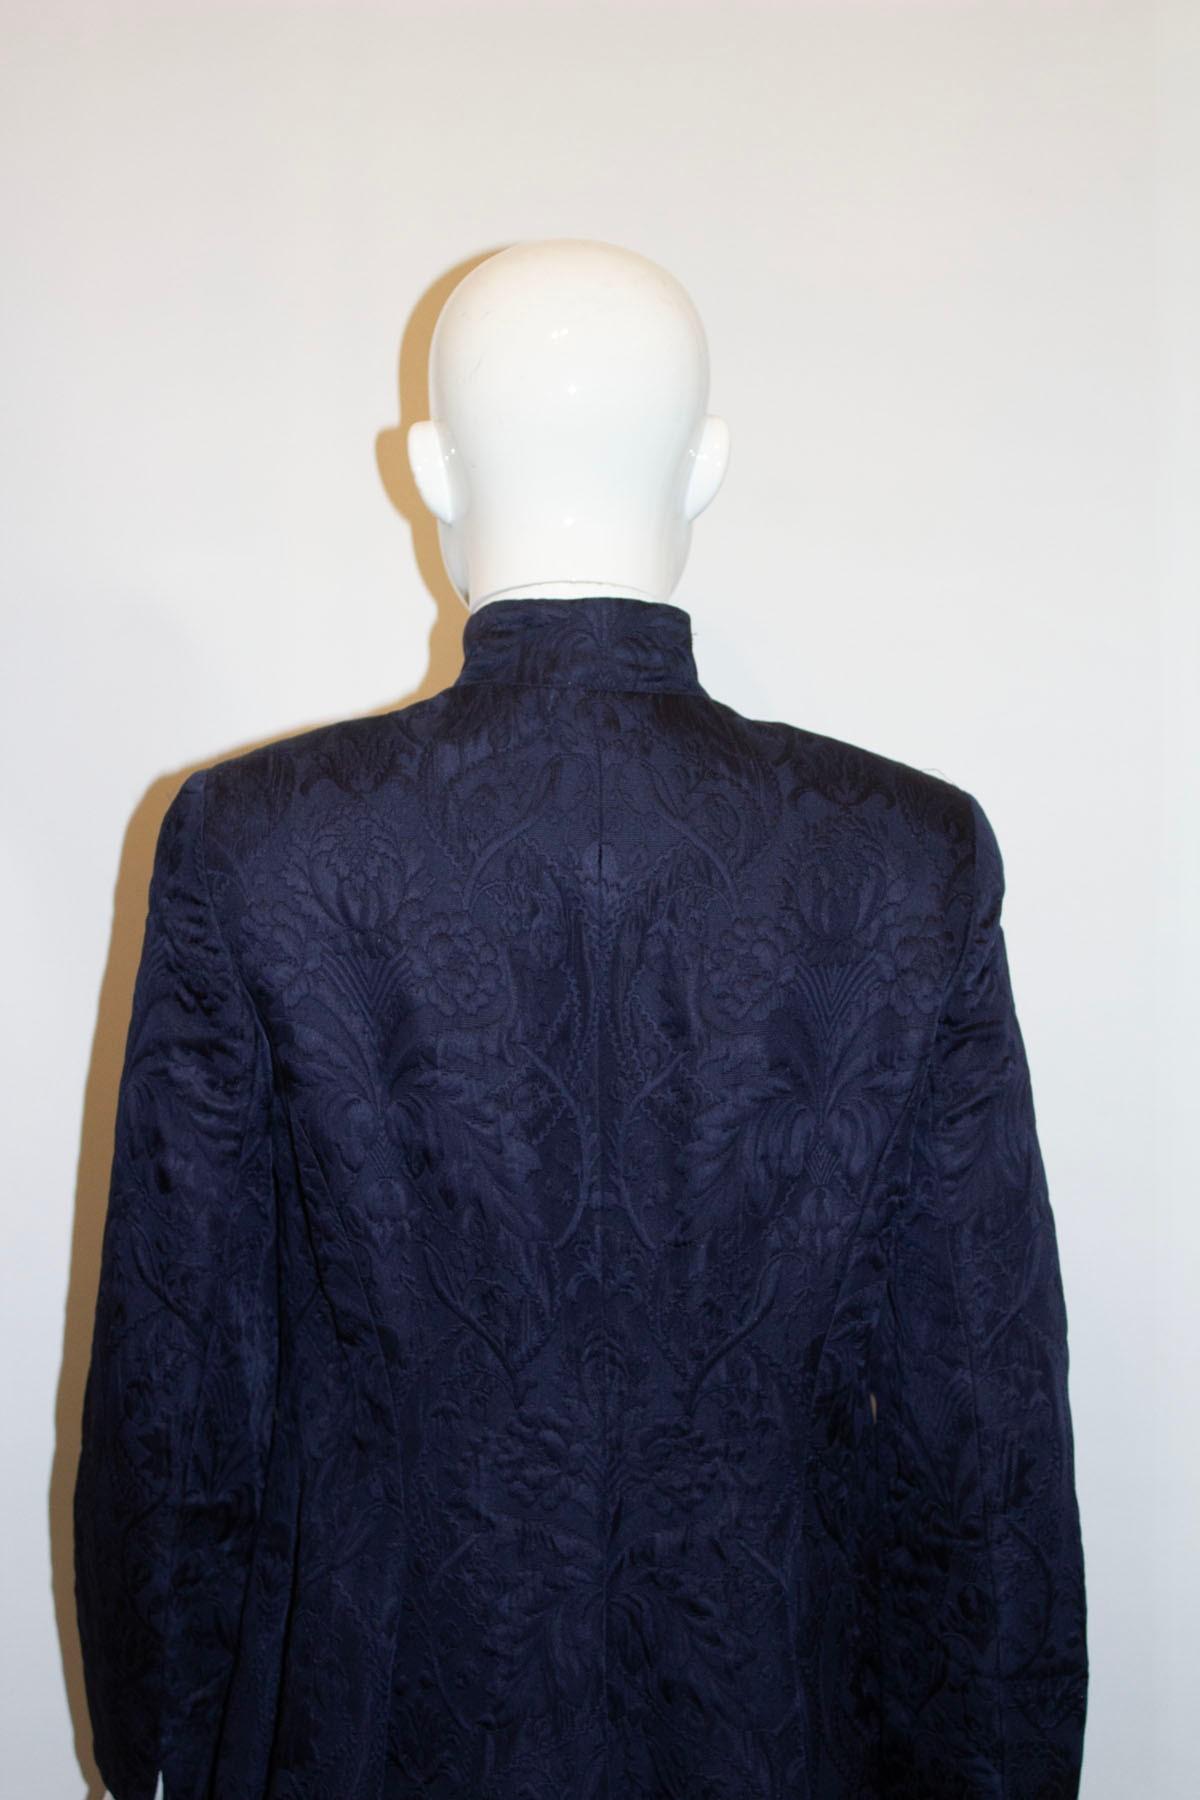 Une veste de soirée vintage chic et facile à porter, signée Caroline Charles. Dans une couleur marine foncée, la veste est faite d'un mélange de soie et de laine aux textures merveilleuses. Il est doté d'un col montant et d'une ouverture à boutons